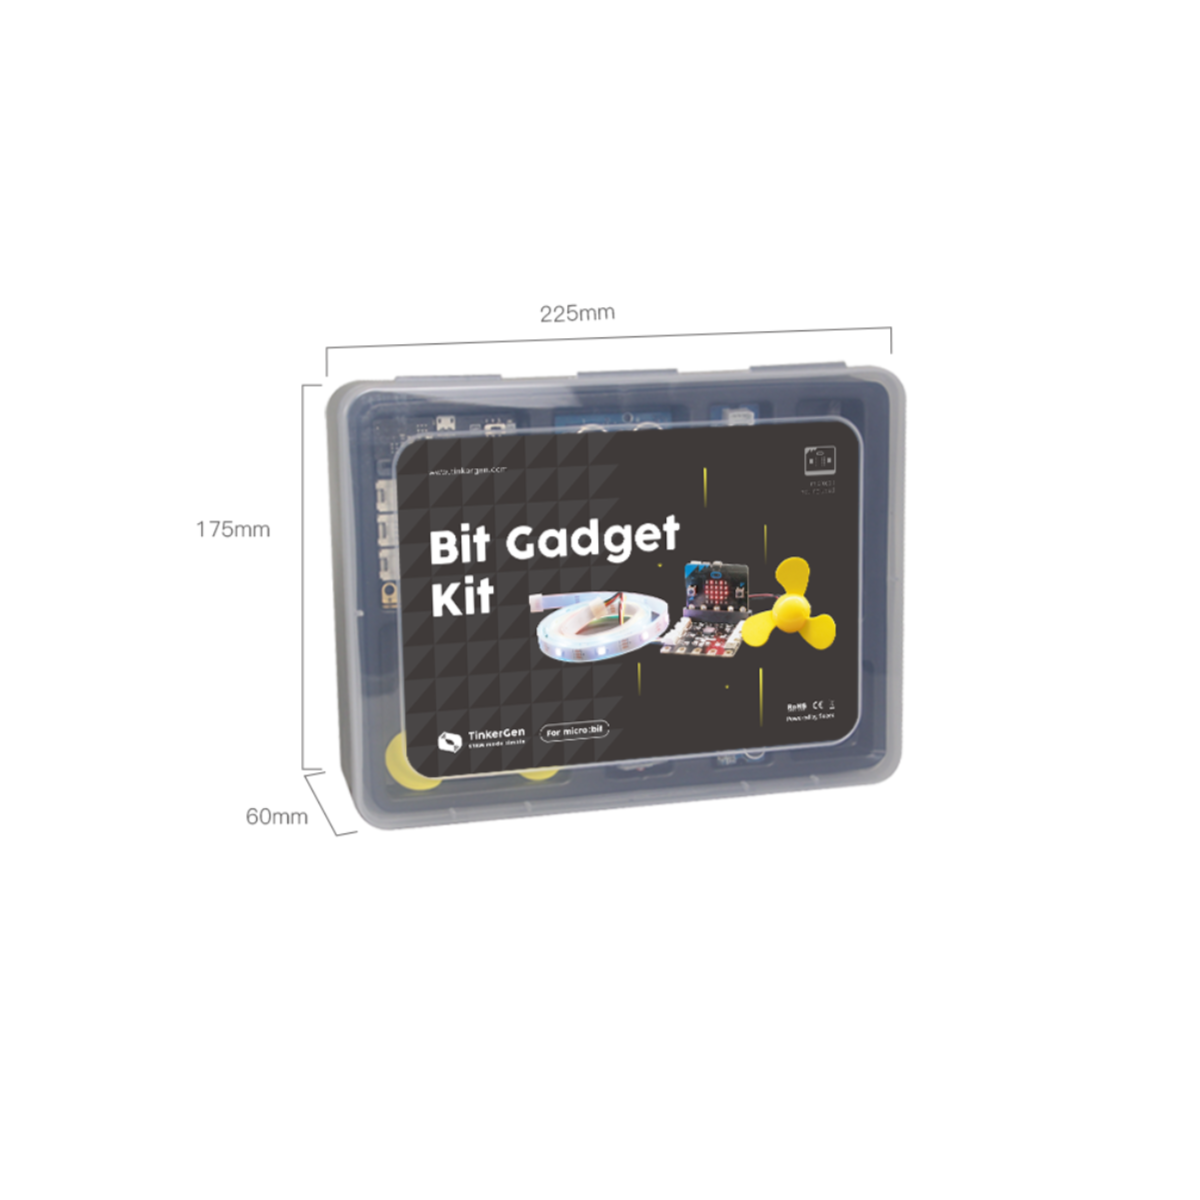 BitGadget Kit - Intermediate Programming Kit for micro:bit